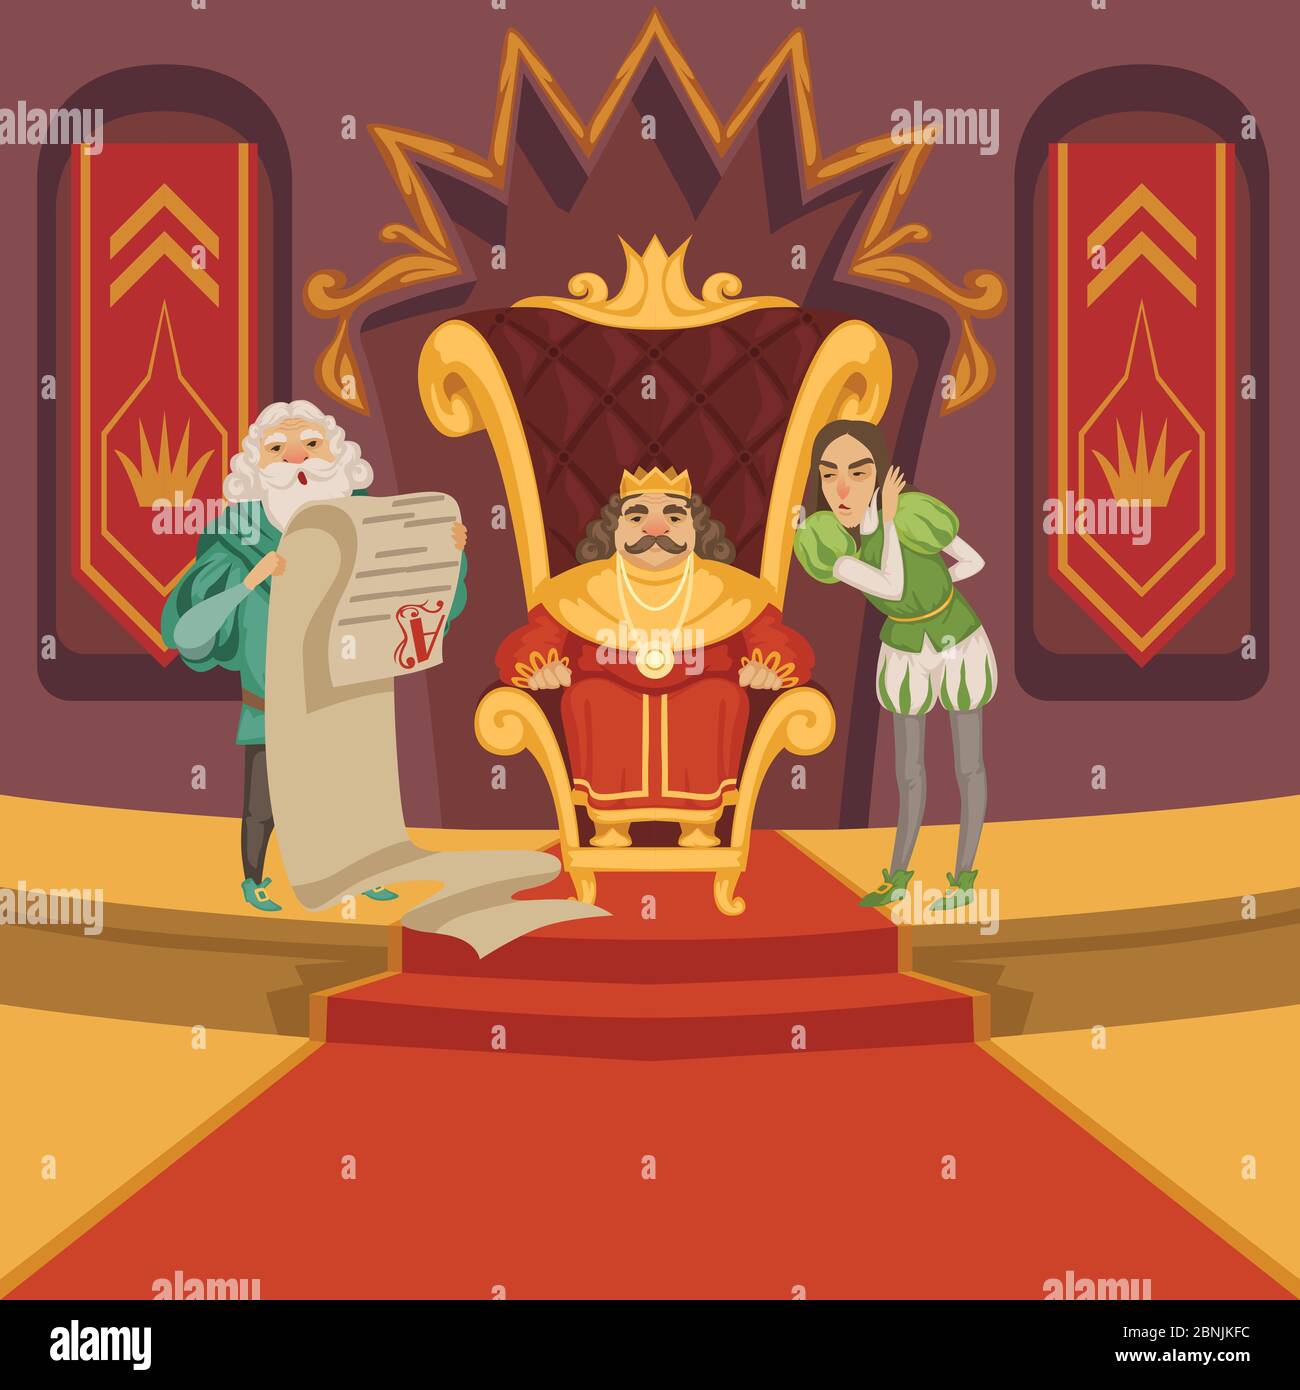 König auf dem Thron und seinem Gefolge. Zeichentrickfiguren gesetzt Stock Vektor